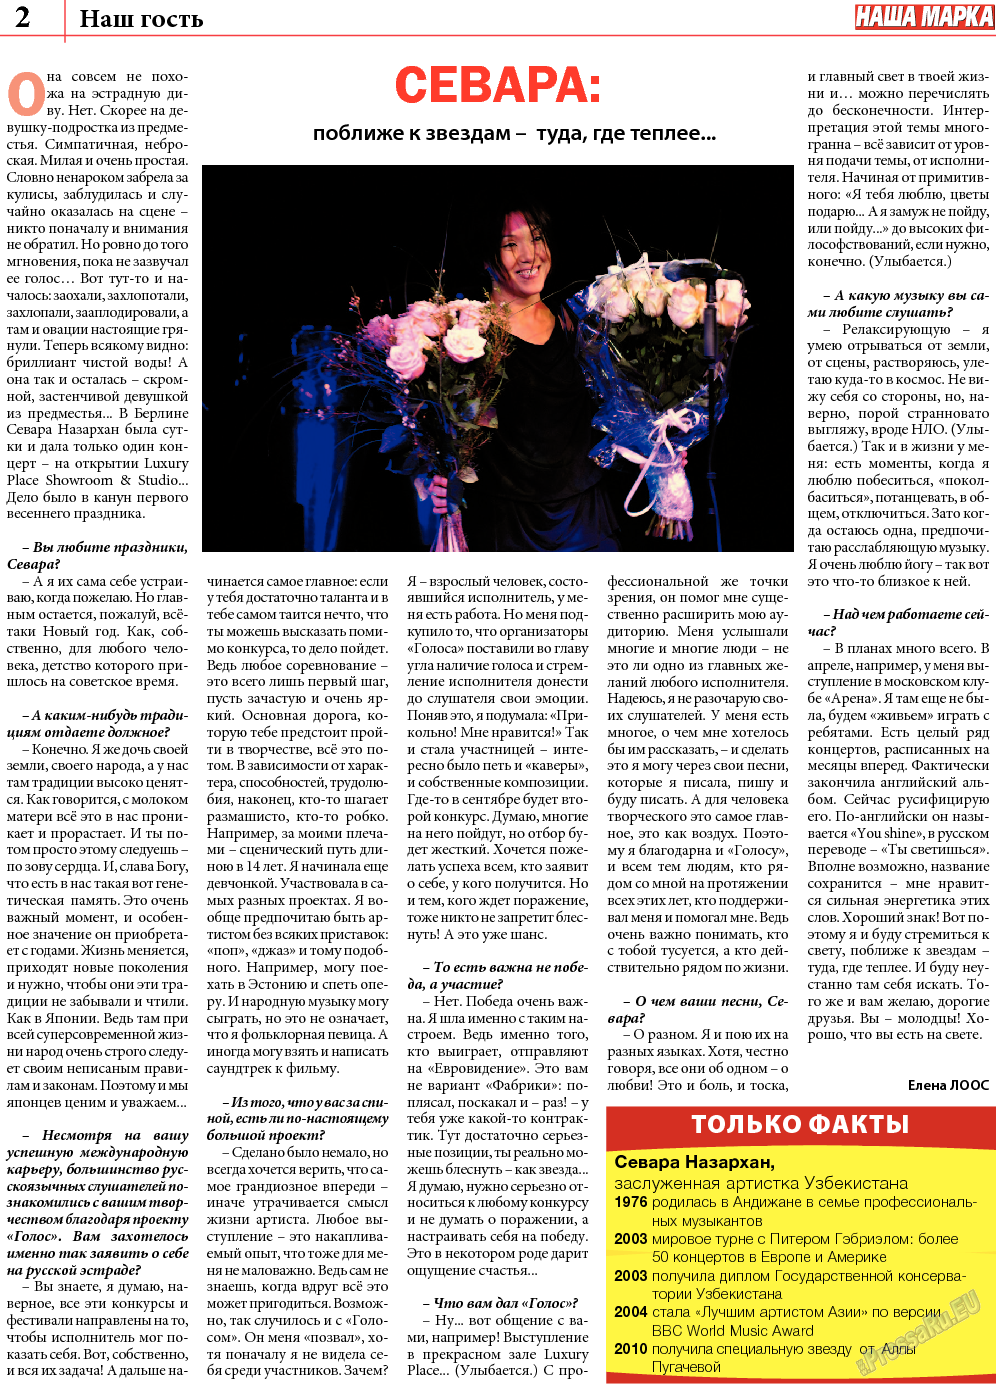 Наша марка (газета). 2013 год, номер 8, стр. 2